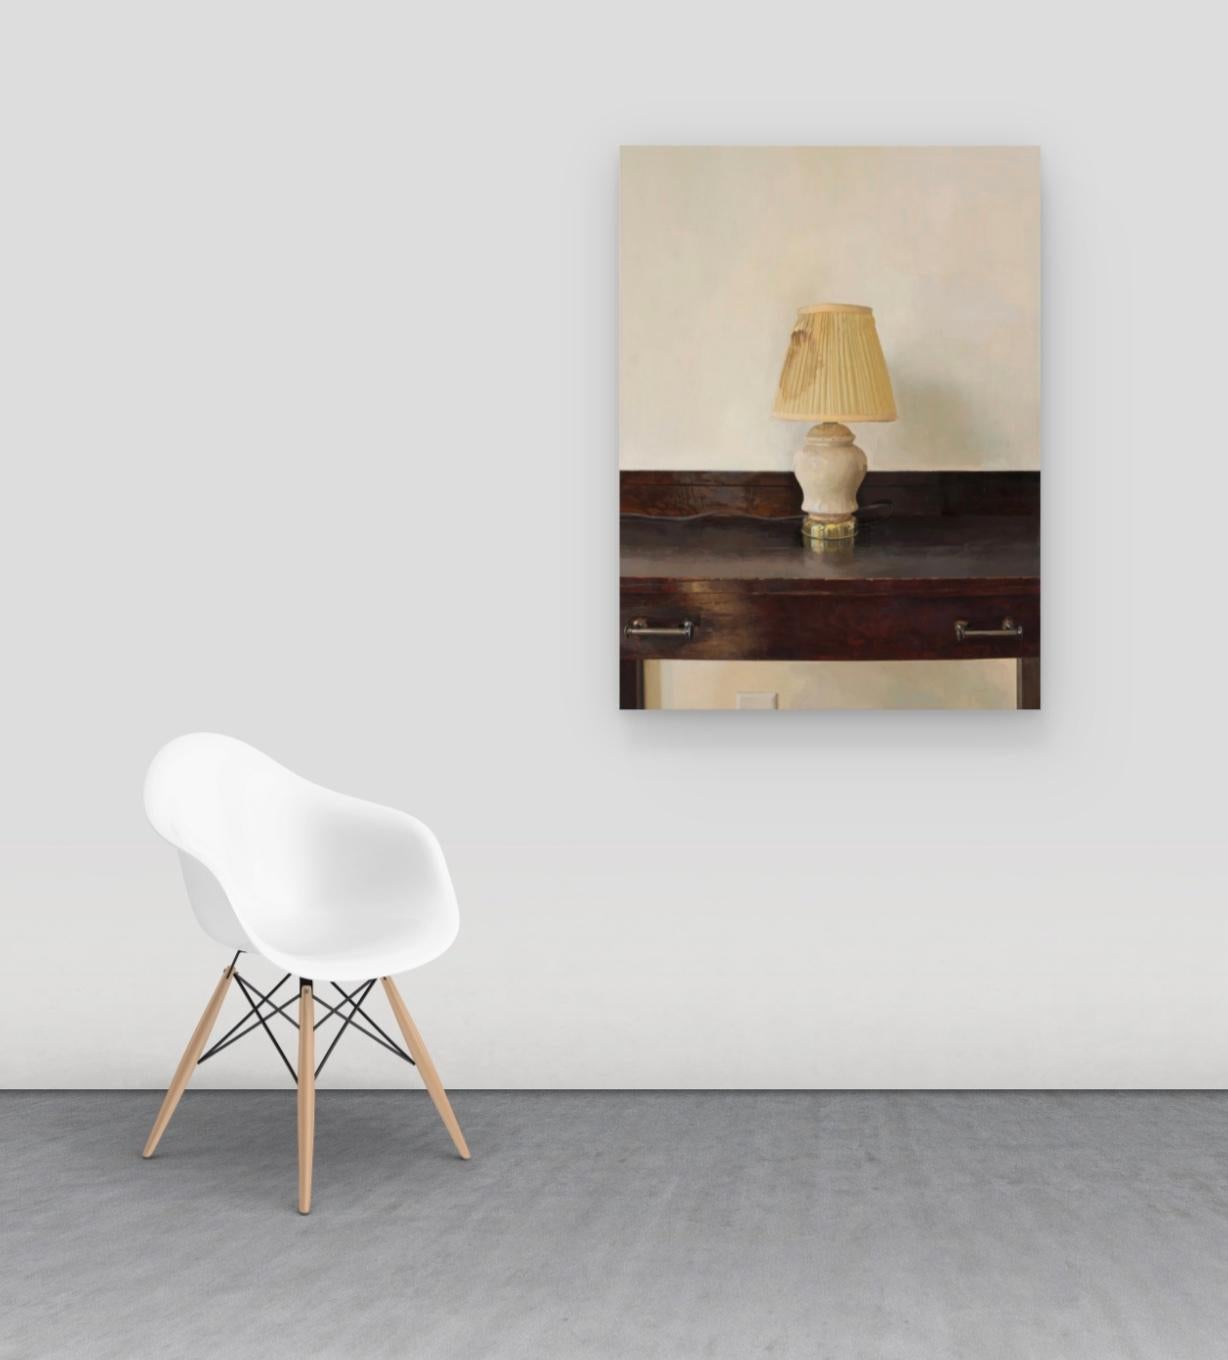 Lampe, neu Revisited, Stillleben mit Lampe auf dunkelbraunem Mahagoni-Holz-Schreibtisch (Zeitgenössisch), Painting, von Brett Eberhardt